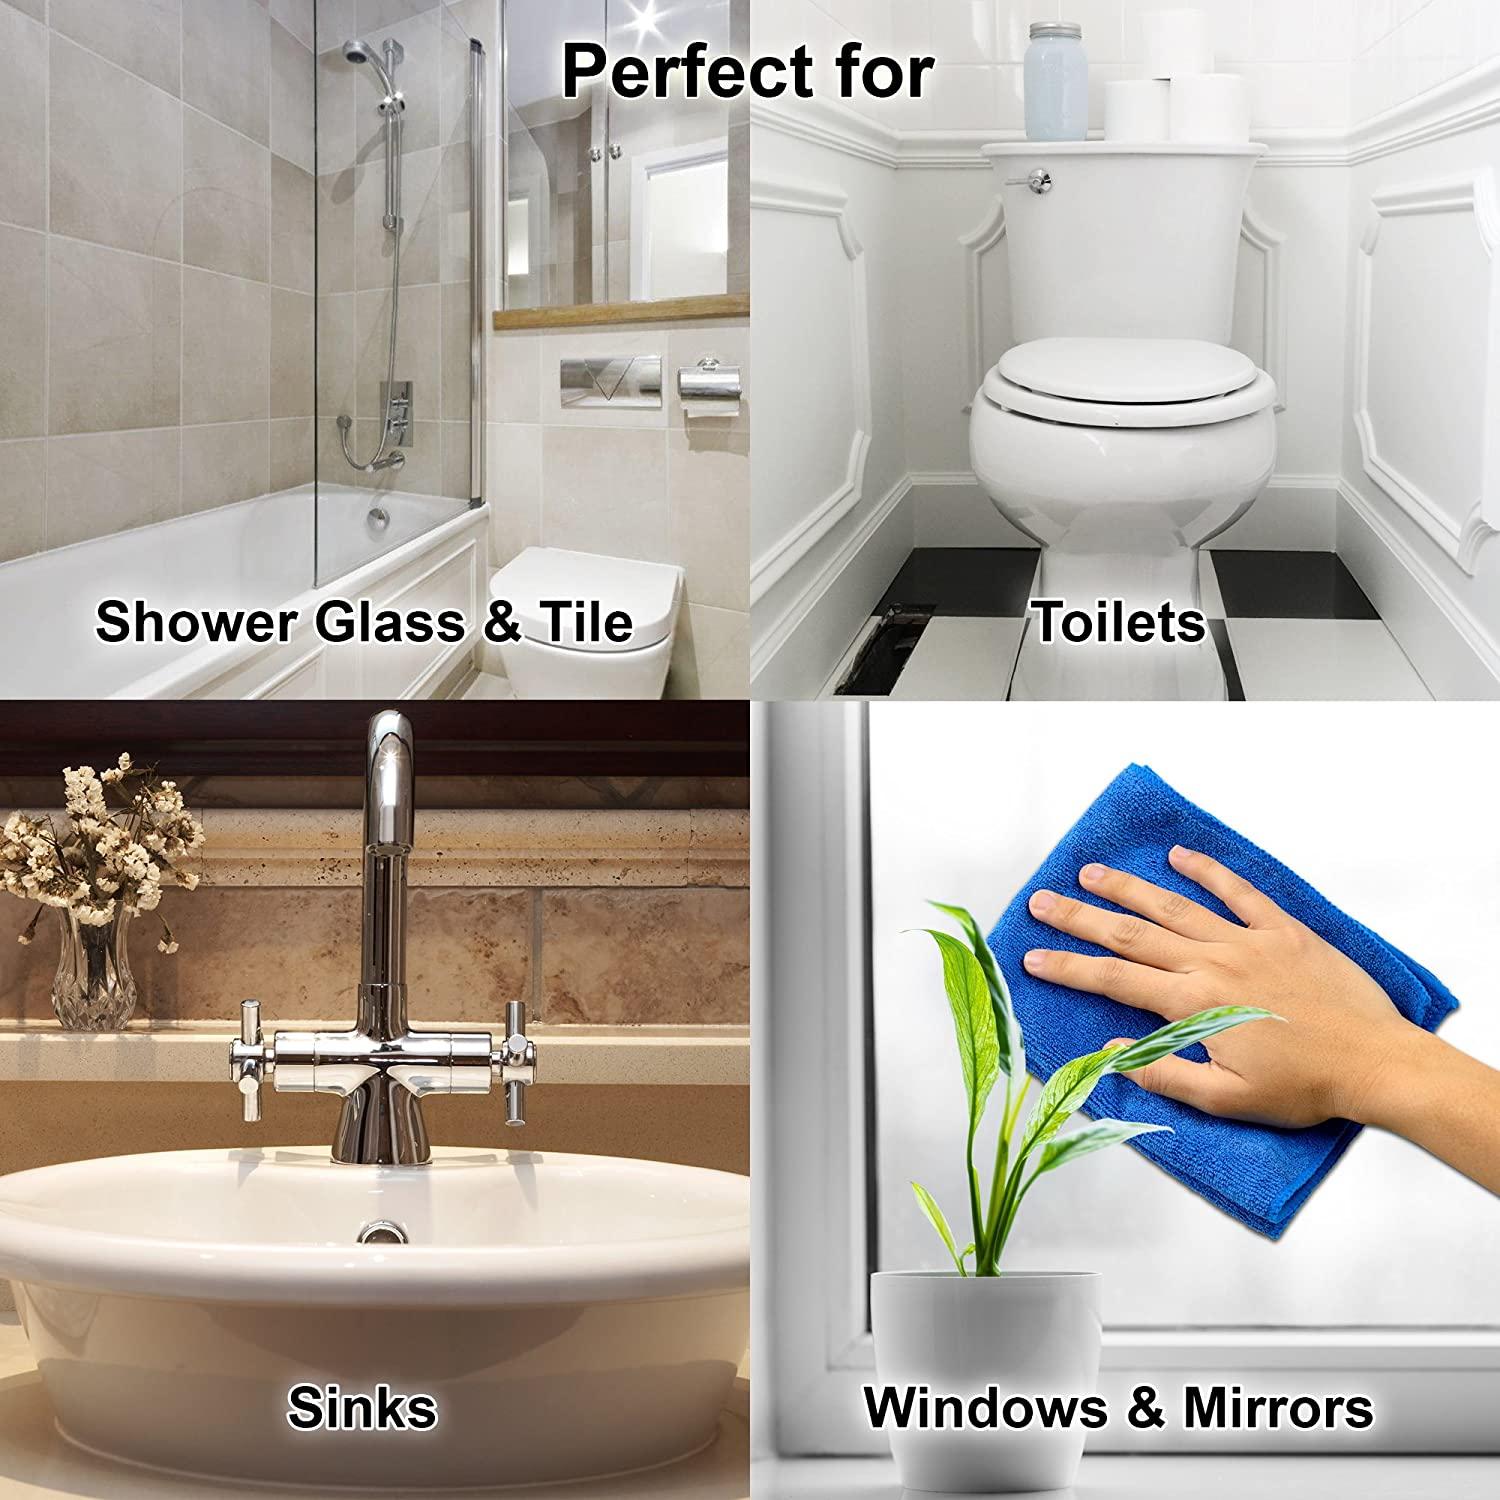  Eliminate® Shower, Tub & Tile Cleaner, 25 oz : Health